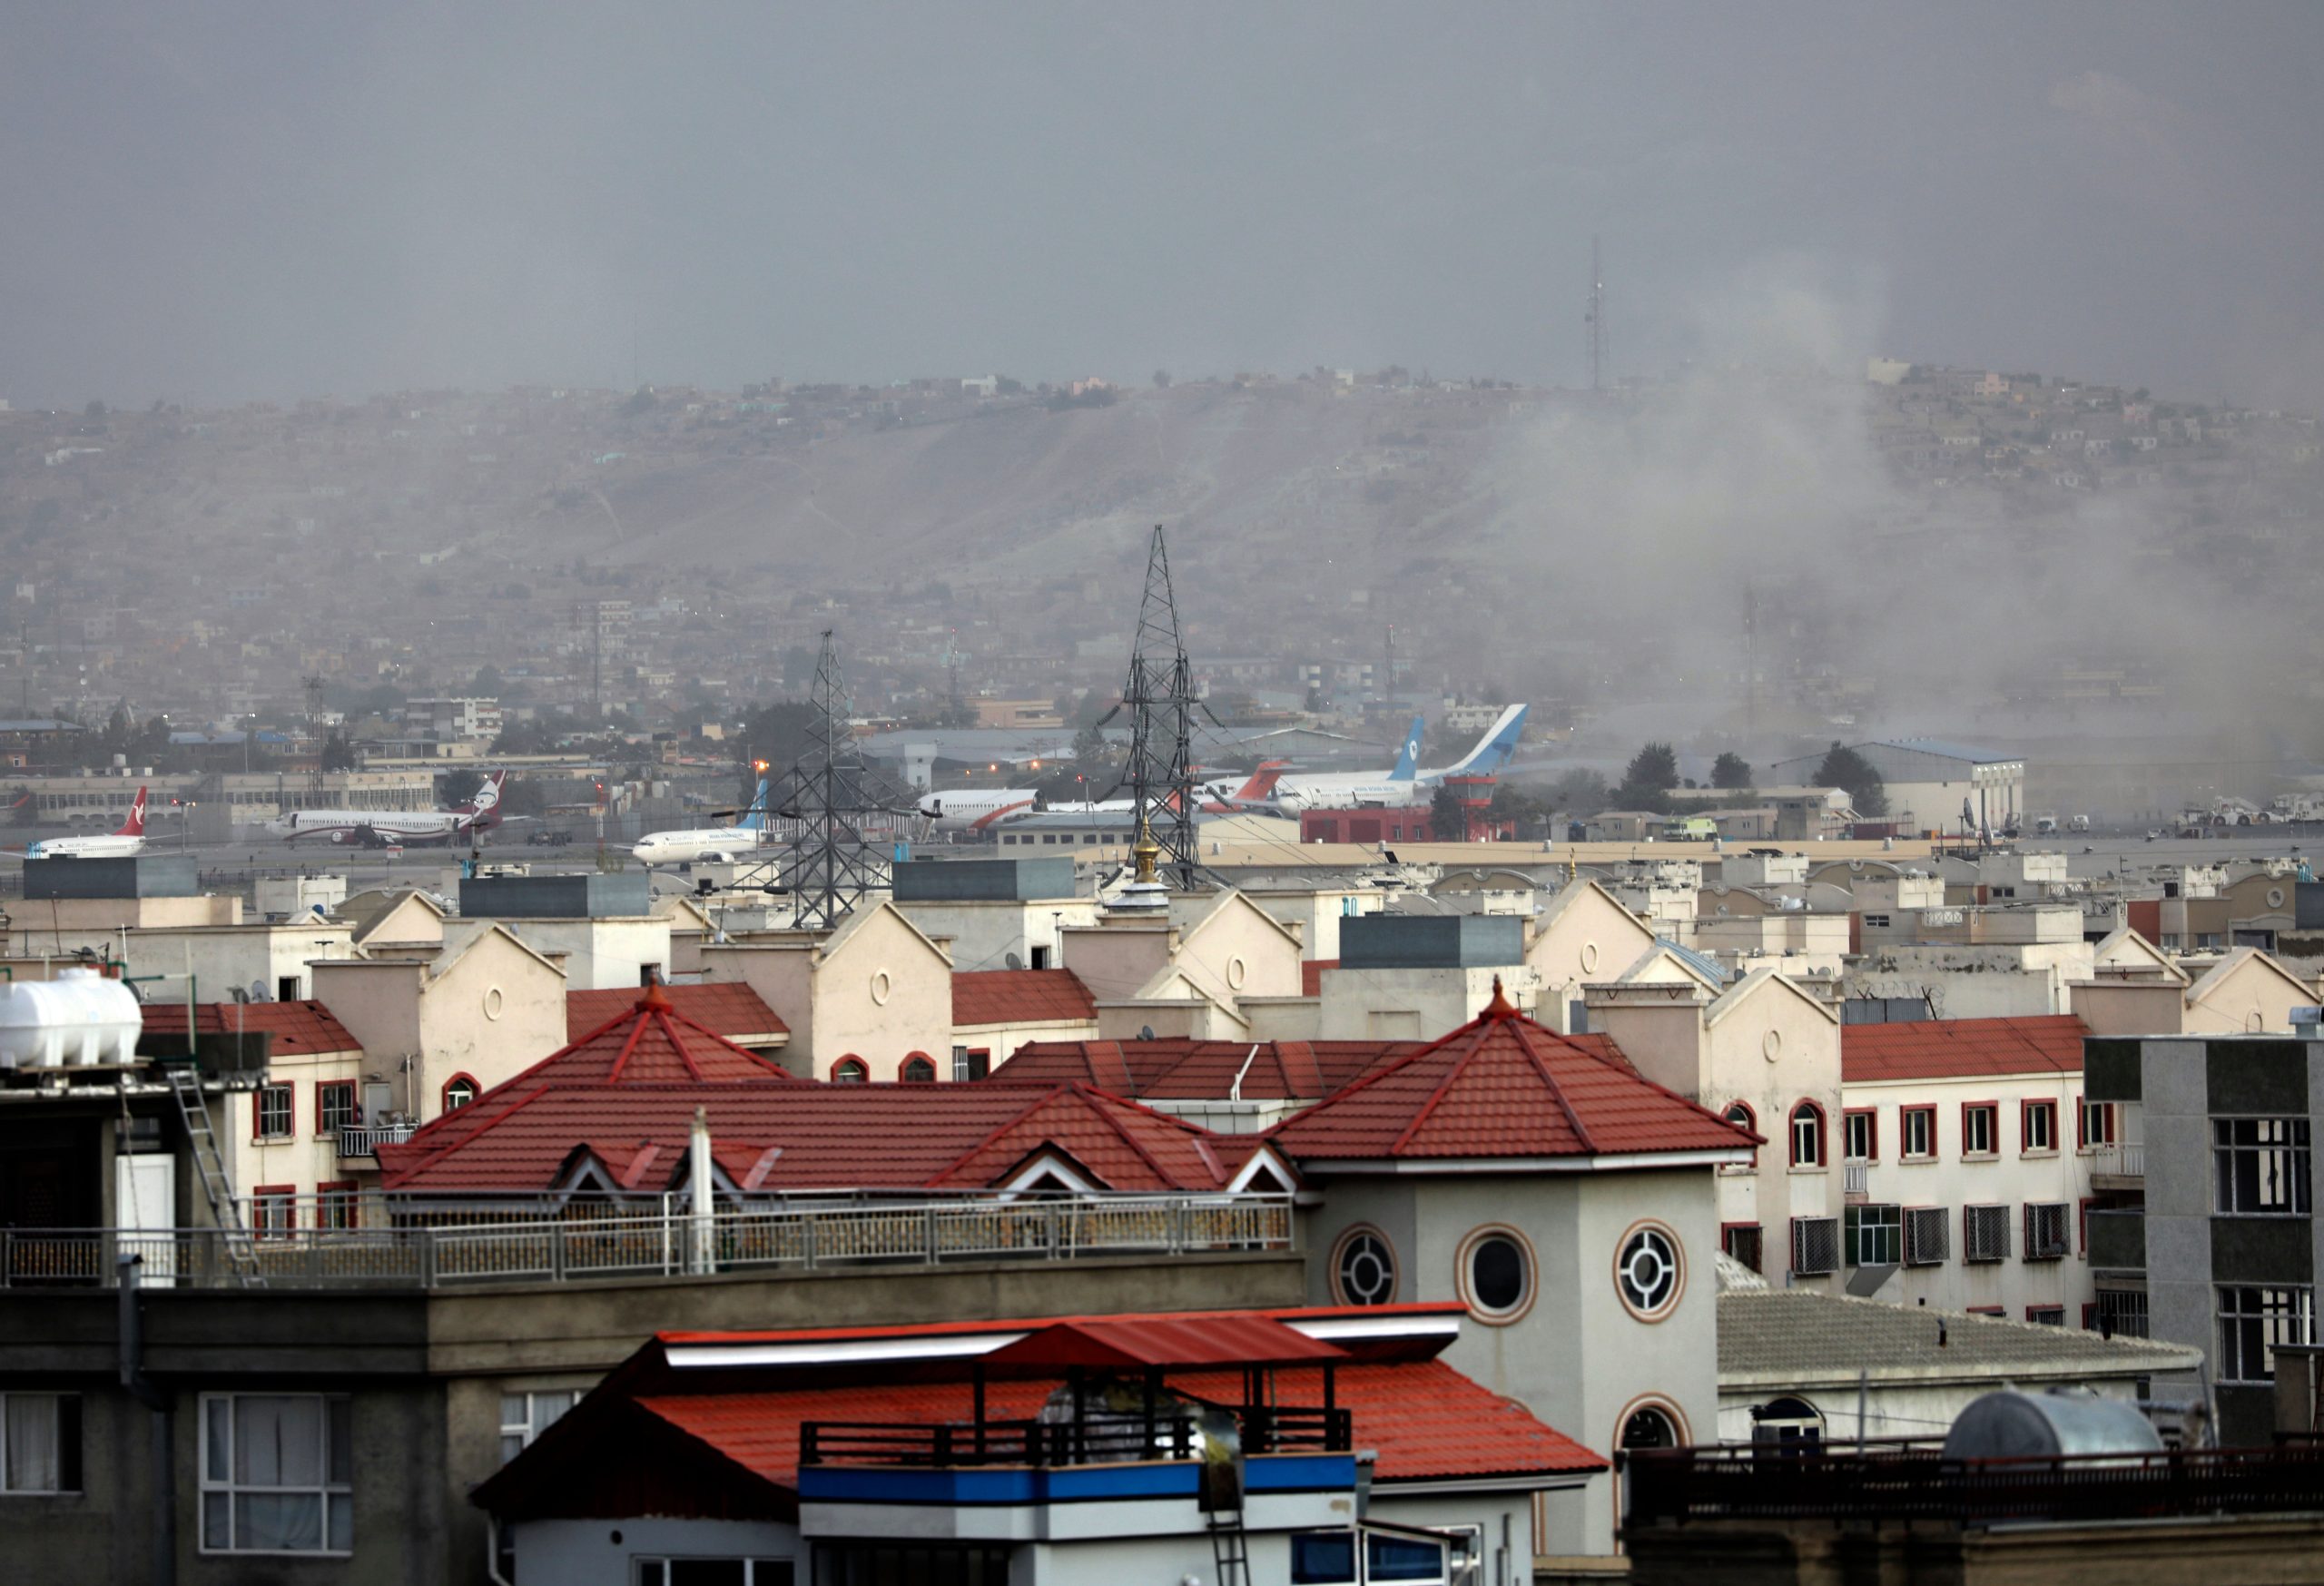 अफगानिस्तान: काबुल एयरपोर्ट के बाहर धमाके में 13 US कमांडो समेत 60 की मौत, 140 घायल